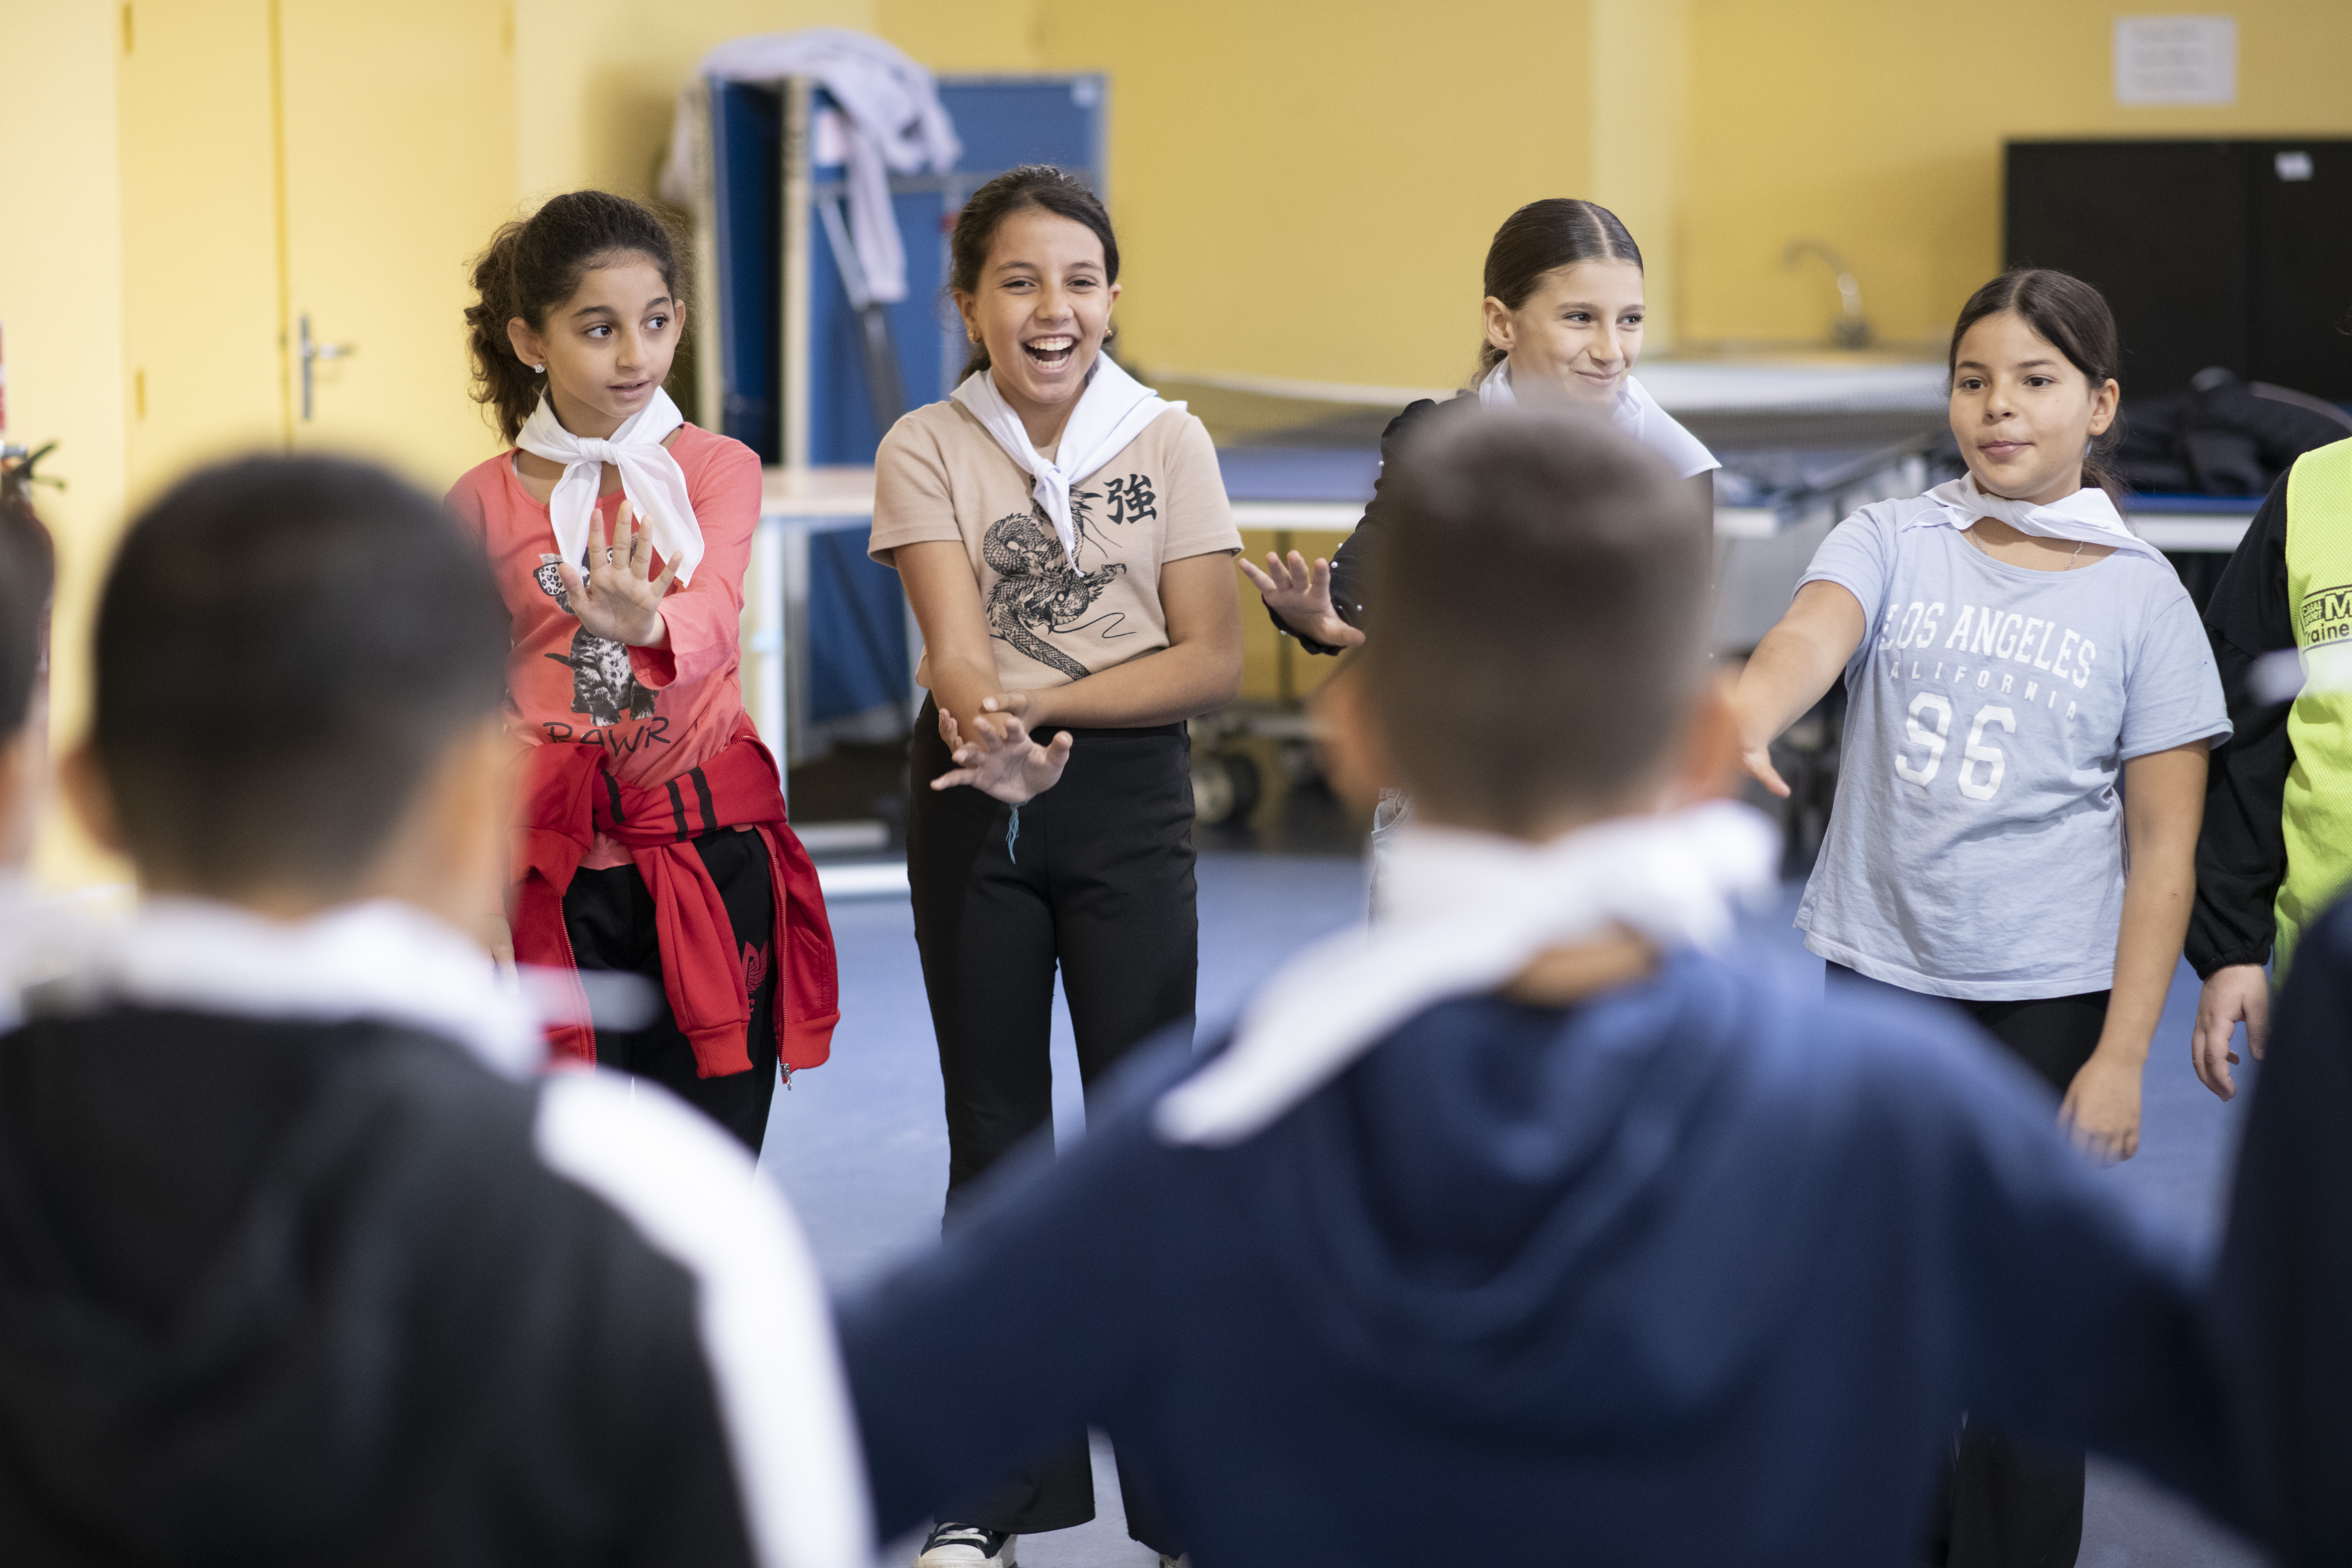 « La pratique du théâtre est une belle source de communication et d’échanges entre les enfants », explique Ombline d’Avezac, coordinatrice du projet à Culture pour l’enfance - Crédit photo : DR.